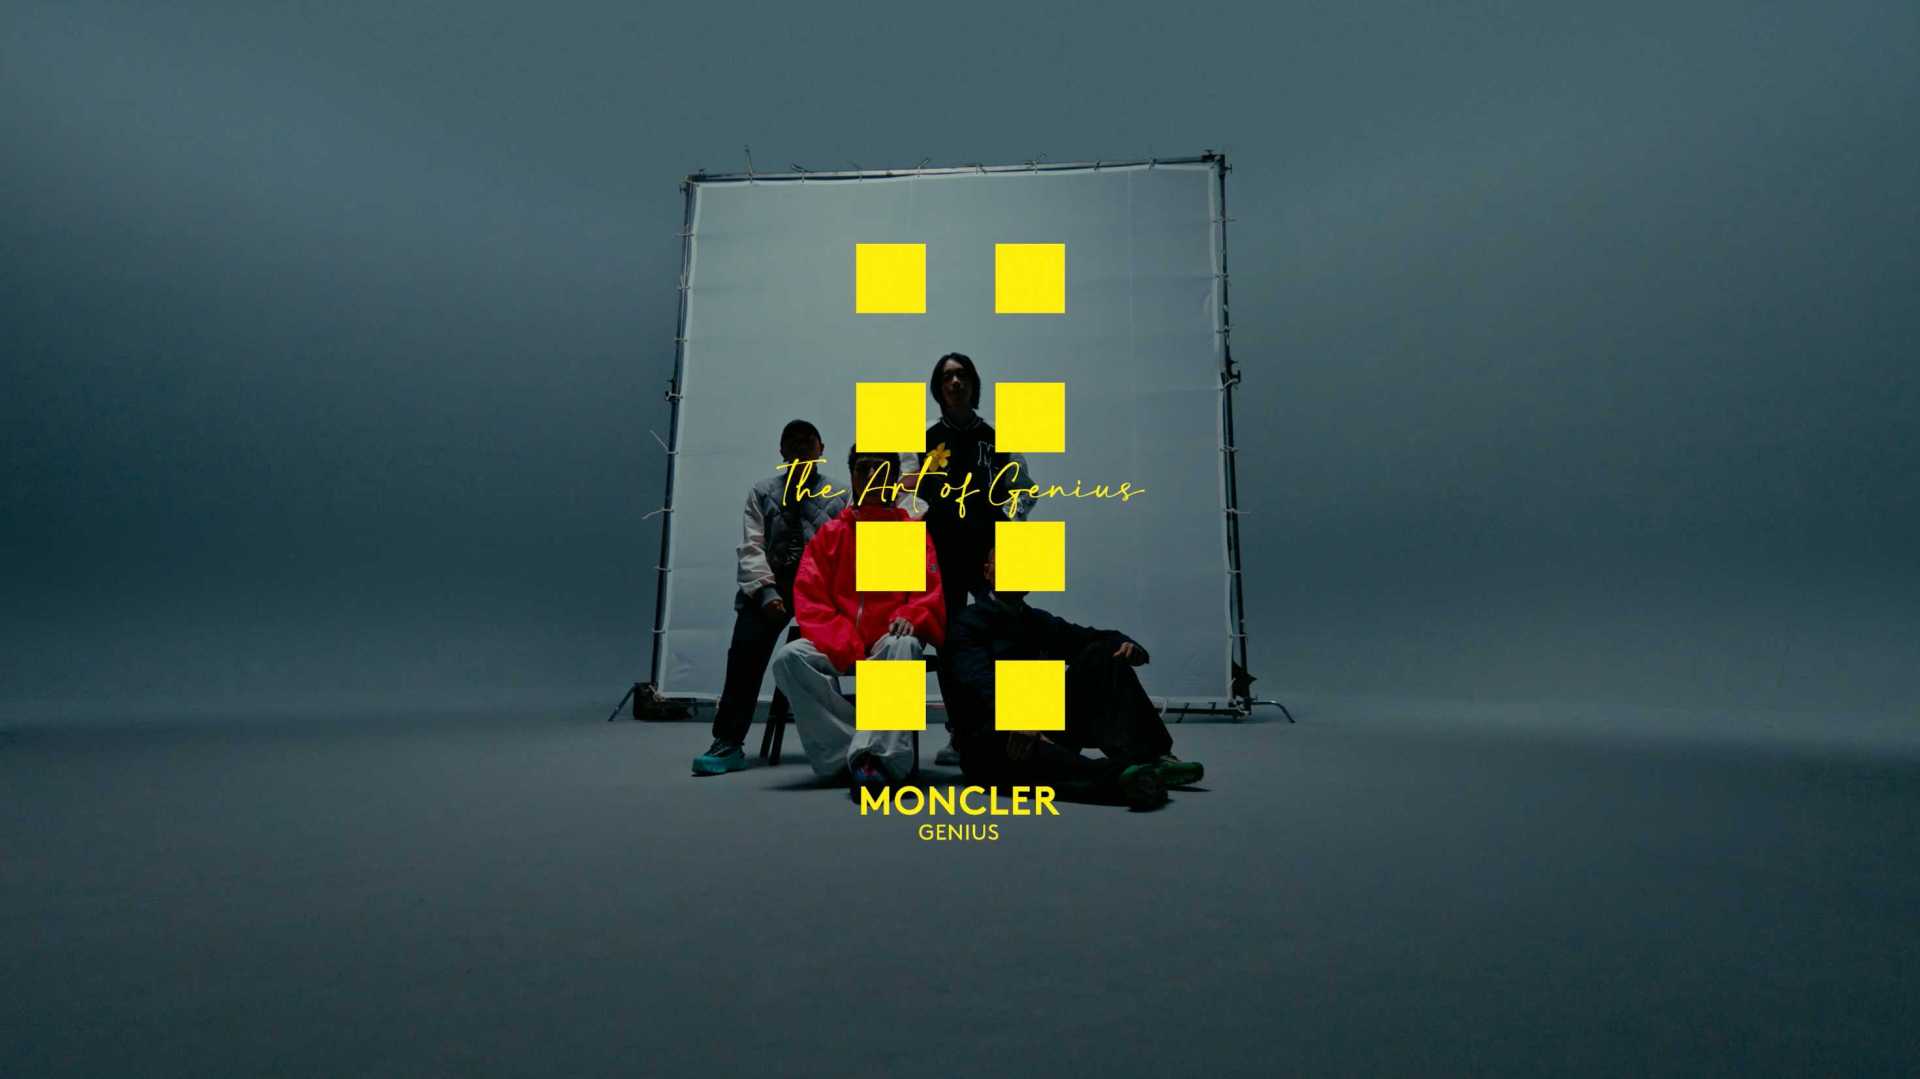 Moncler x NYLON-The Art of Genius Teaser